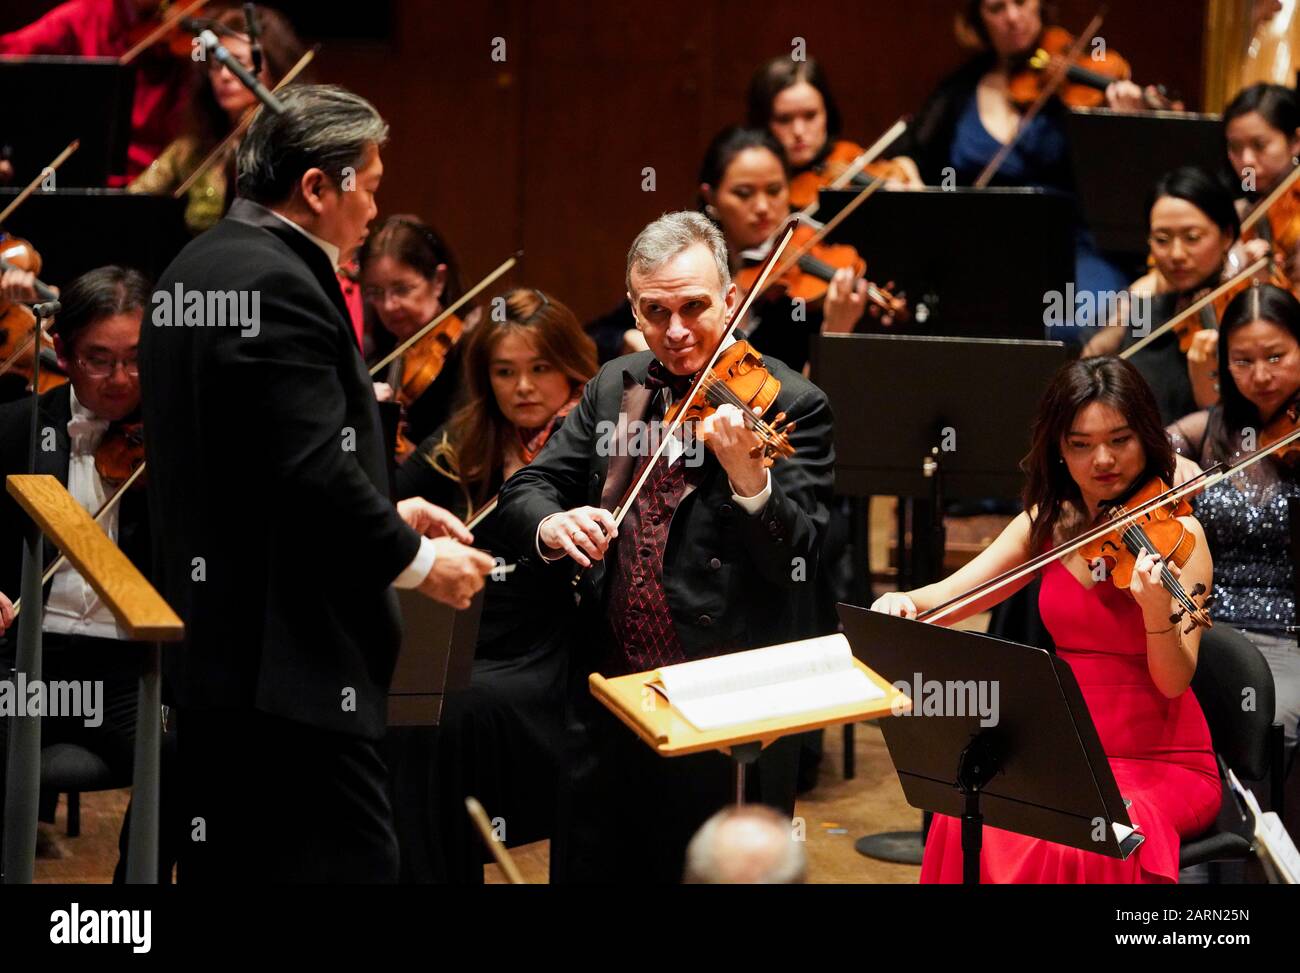 (200129) -- NEW YORK, 29. Januar 2020 (Xinhua) -- der amerikanische Geiger Gil Shaham (C) führt "The Butterfly Lovers" mit dem Orchester während eines Lunar New Year Concert der New Yorker Philharmoniker in New York, den Vereinigten Staaten, 28. Januar 2020 auf. Die New Yorker Philharmoniker präsentierten am Dienstagabend ihr neuntes jährliches Lunar New Year Concert mit gefeierten und aufstrebenden Künstlern, die im Jahr der Ratte klingeln sollen. Zu dem Programm gehörten berühmte Musikstücke aus Amerika und Asien, ein Violinenkonzert The Butterfly Lovers mit dem amerikanischen Geiger Gil Shaham als Solist und George Gershwin's Rhapsody in Bl Stockfoto